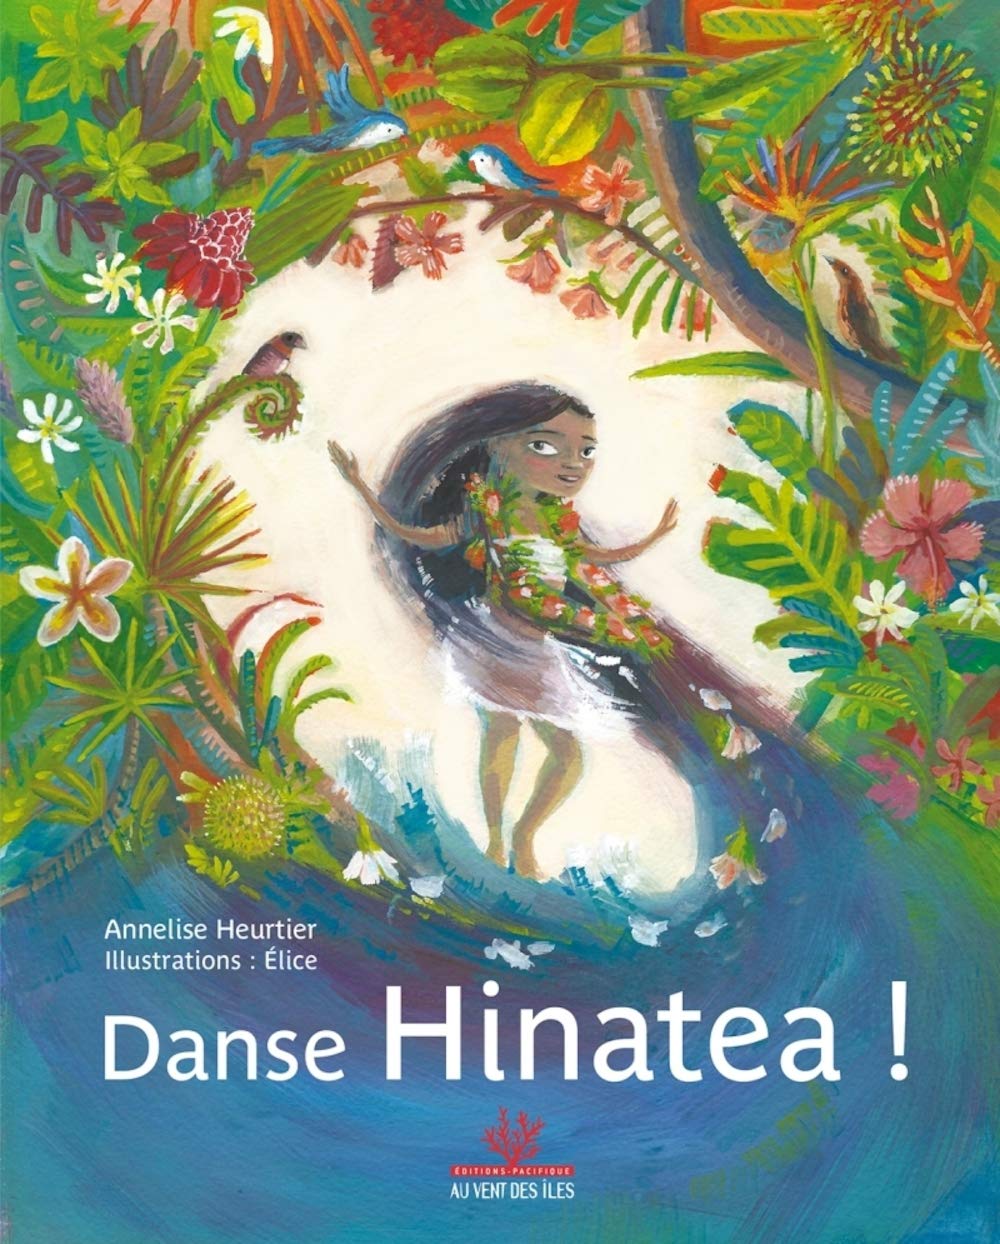 Danse Hinatea